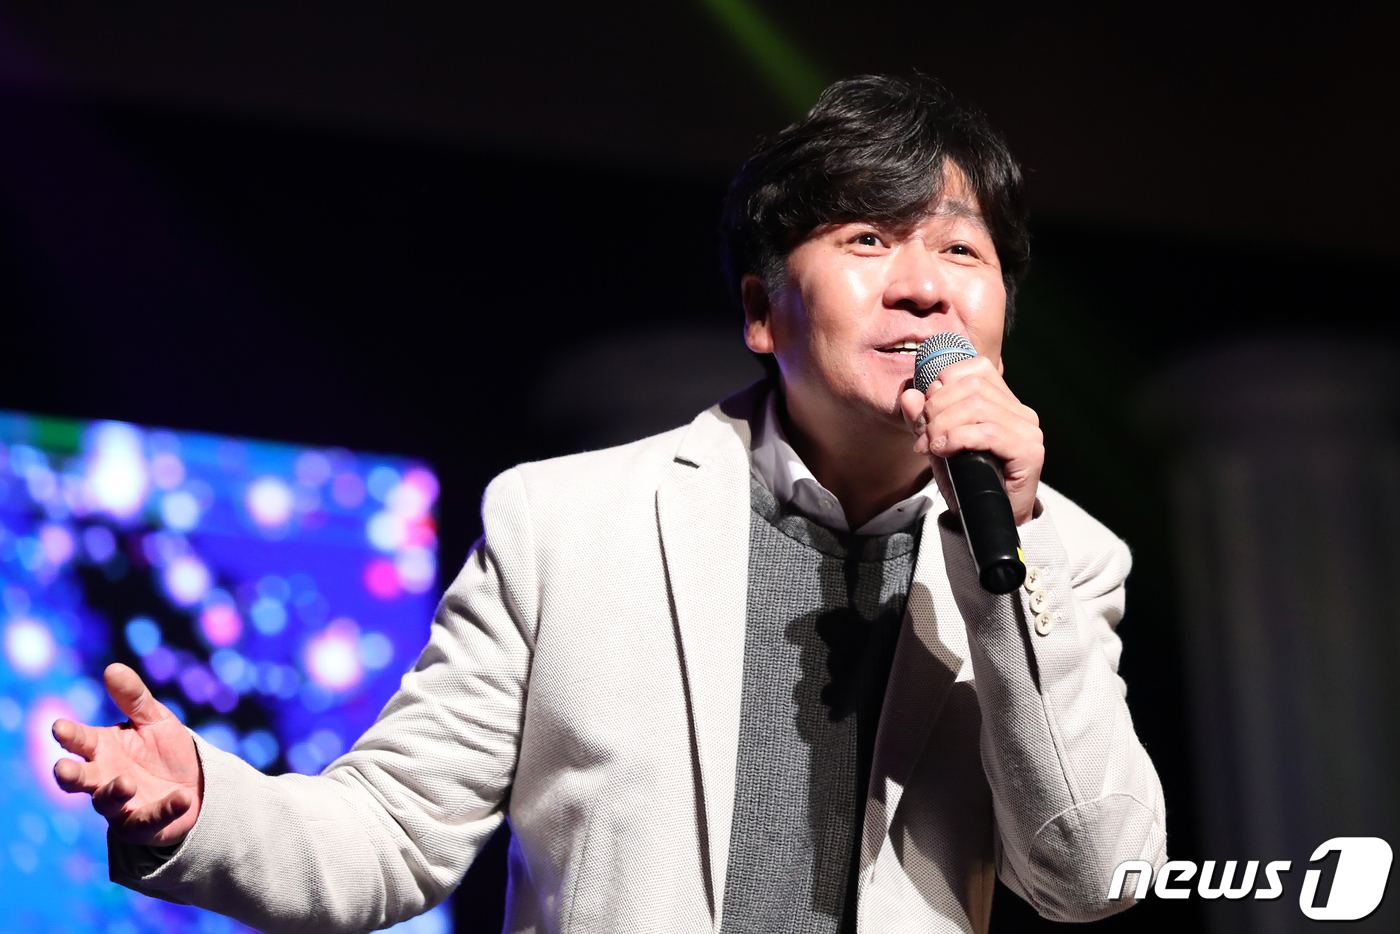 Singer Lee Jung-suk